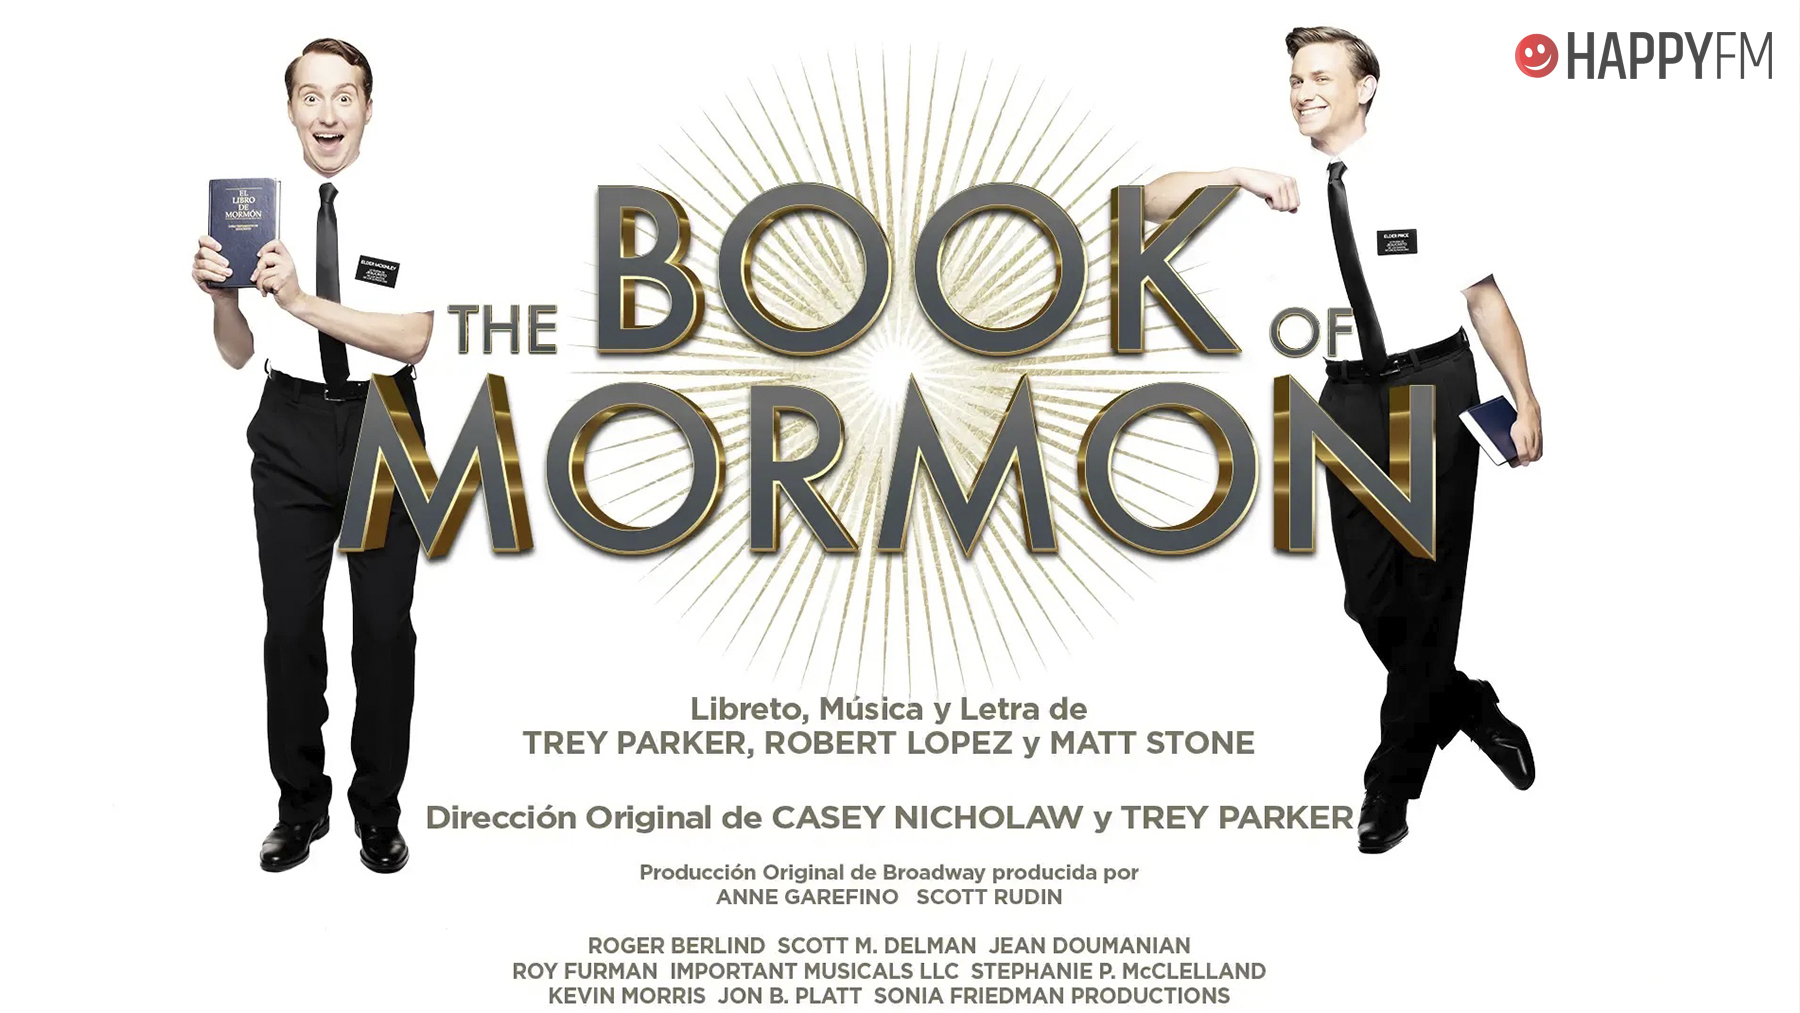 ‘The Book of Mormon’: la irreverente y divertida comedia musical que arrasa en Madrid